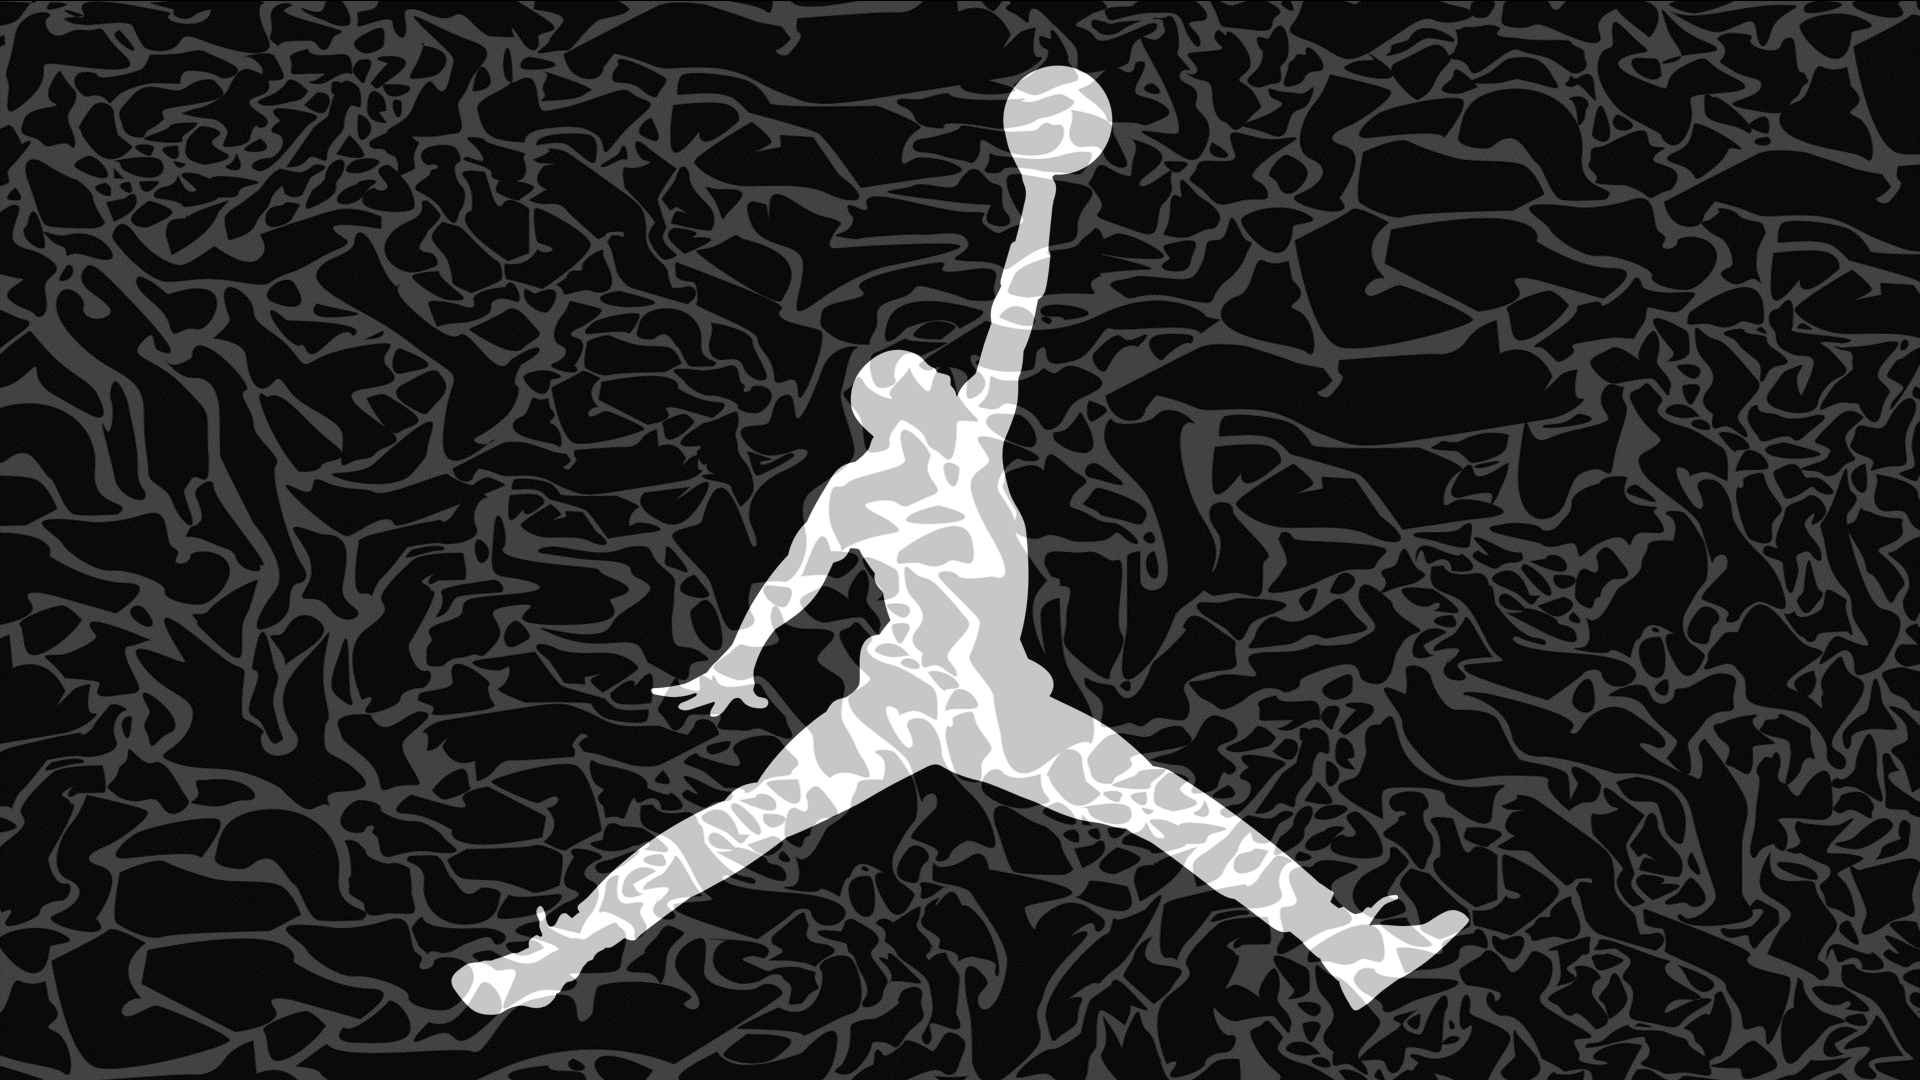 air jordan logo wallpaper,basketball player,player,handball,football,illustration